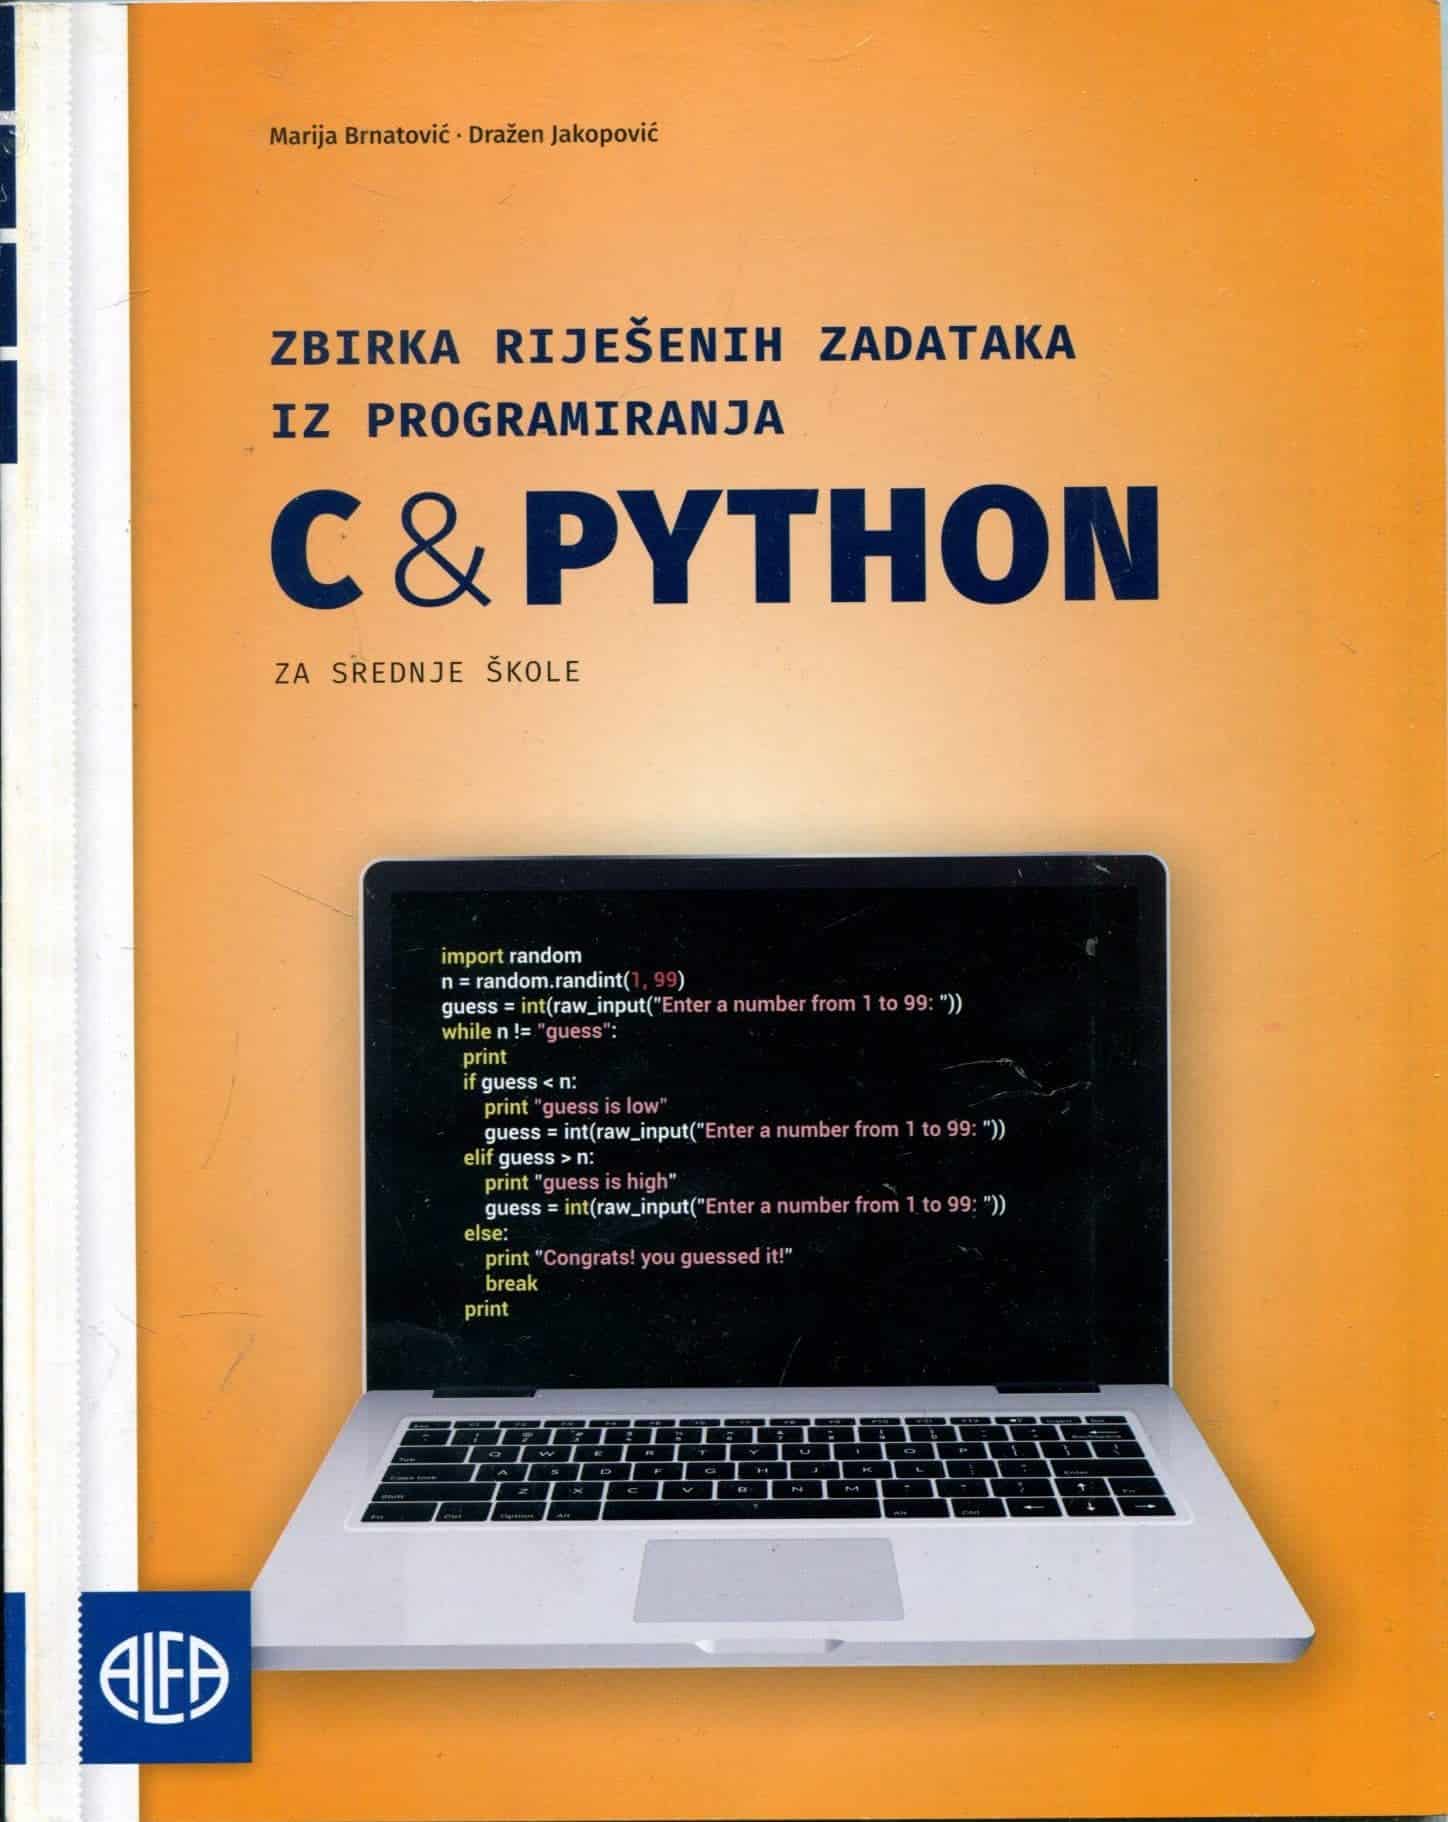 C&PYTHON zbirka riješenih zadataka iz programiranja za srednje škole autora Marija Brnatović, Dražen Jakopović